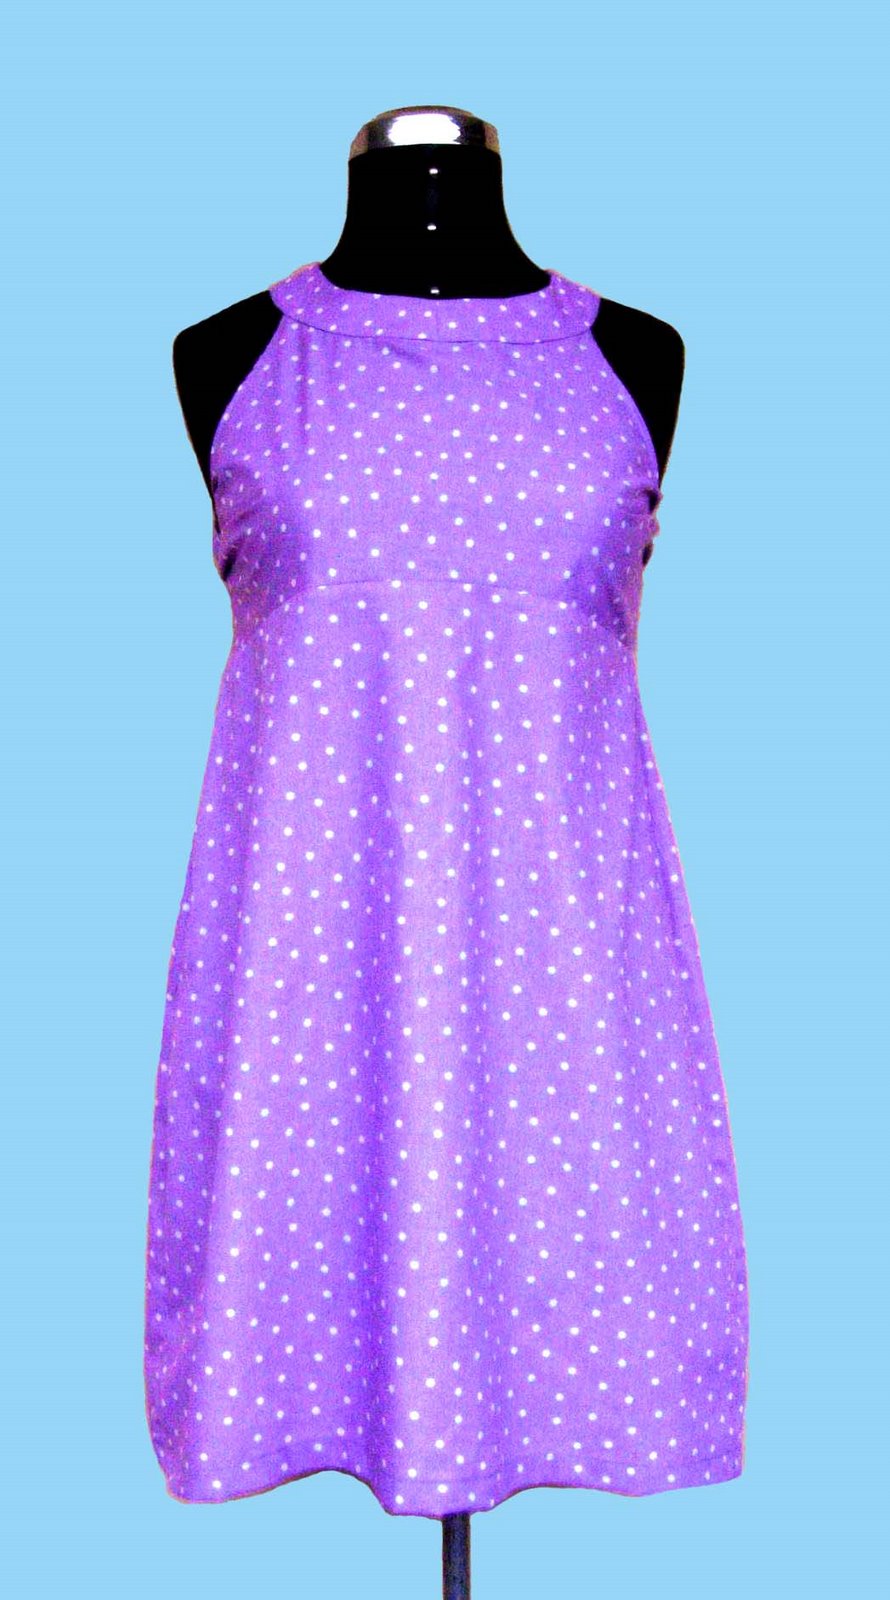 [vestido+lila+puntos+copy.jpg]